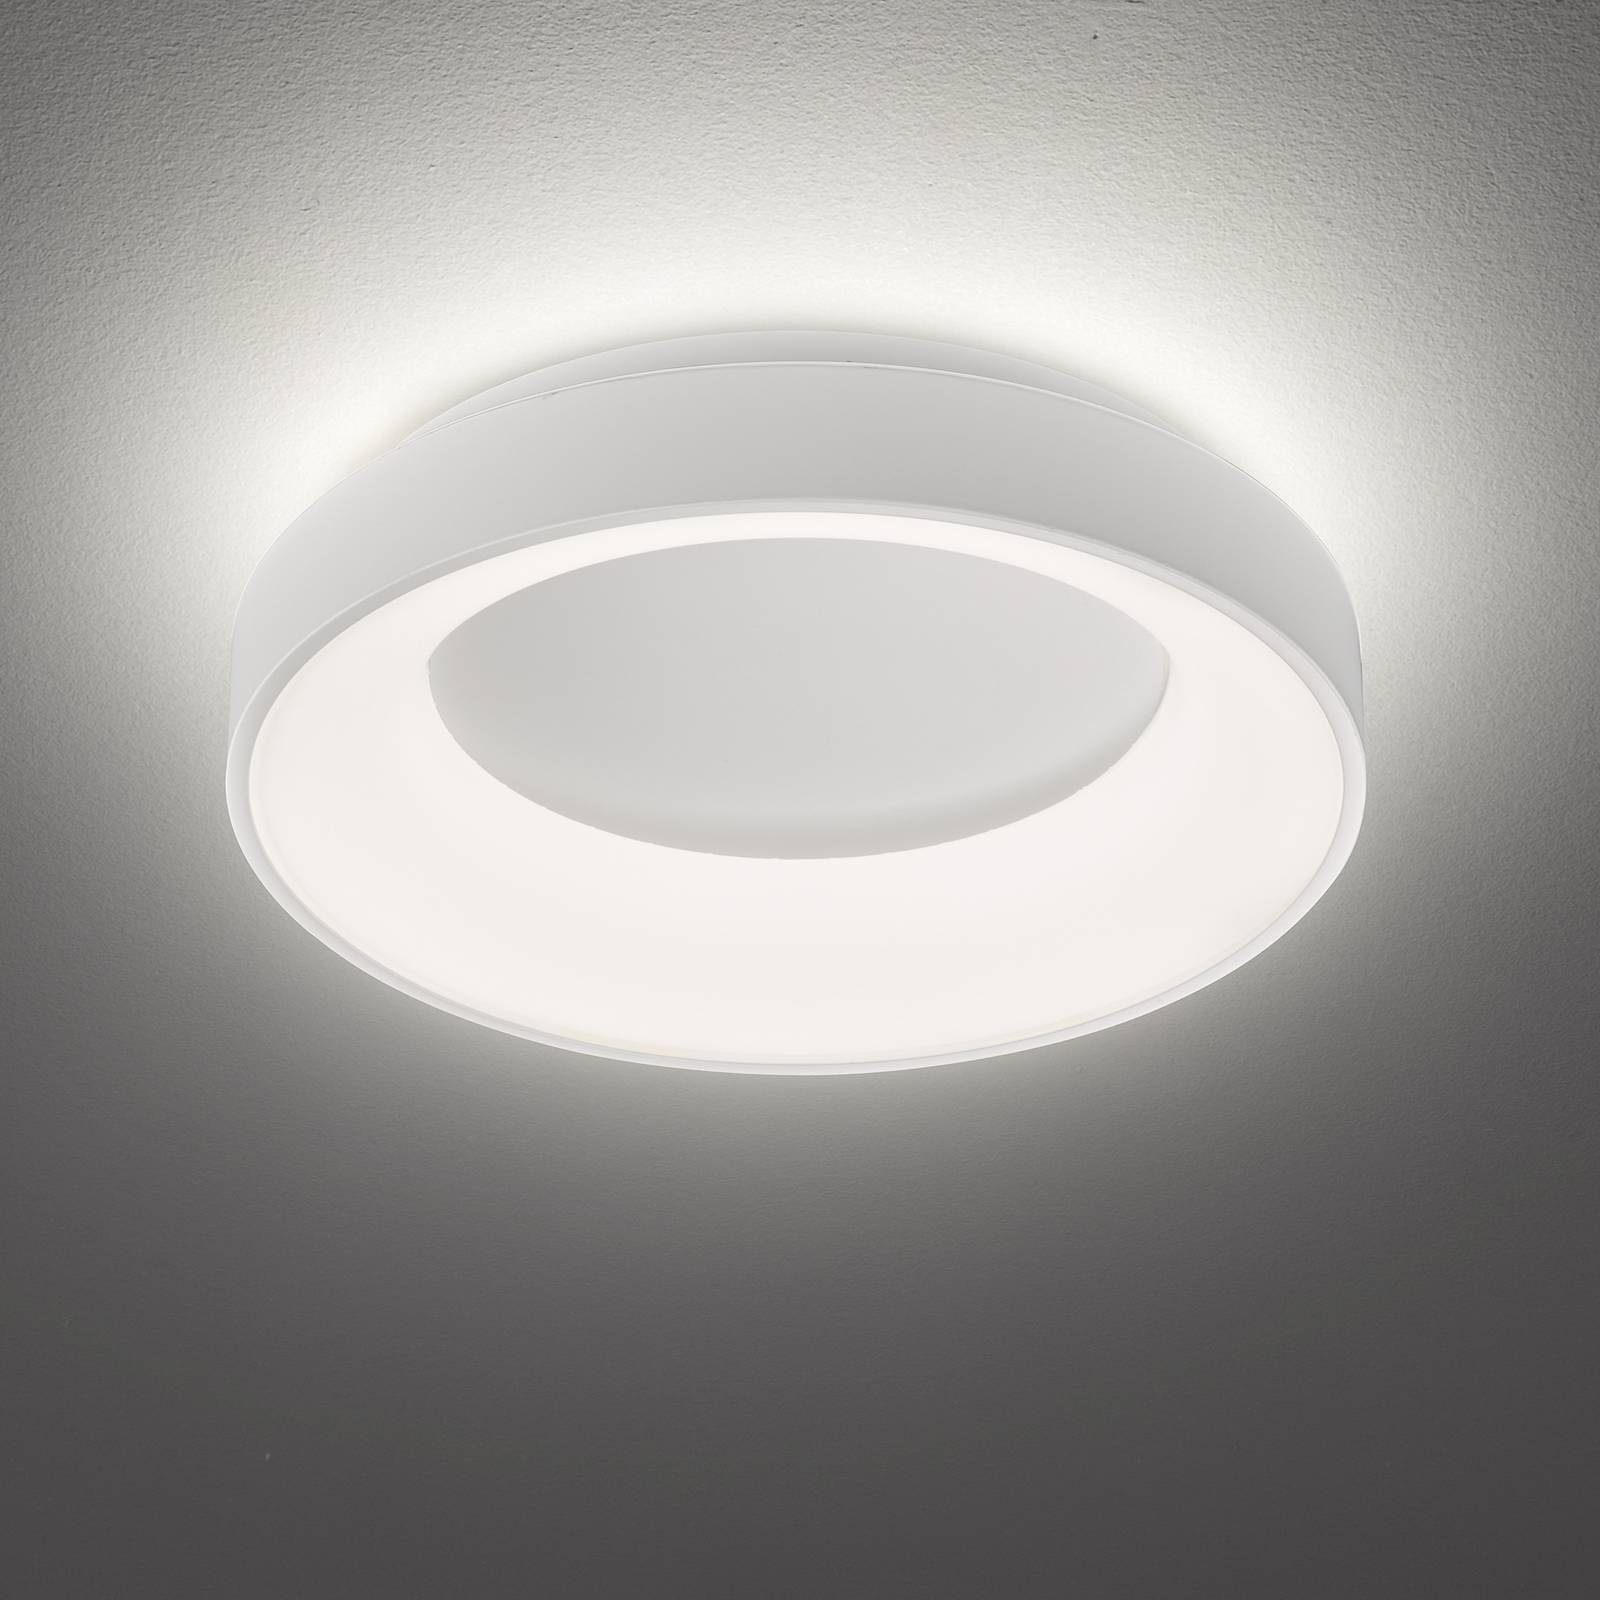 LED plafondlamp Shay 3-Step-dim, wit, Ø 45 cm